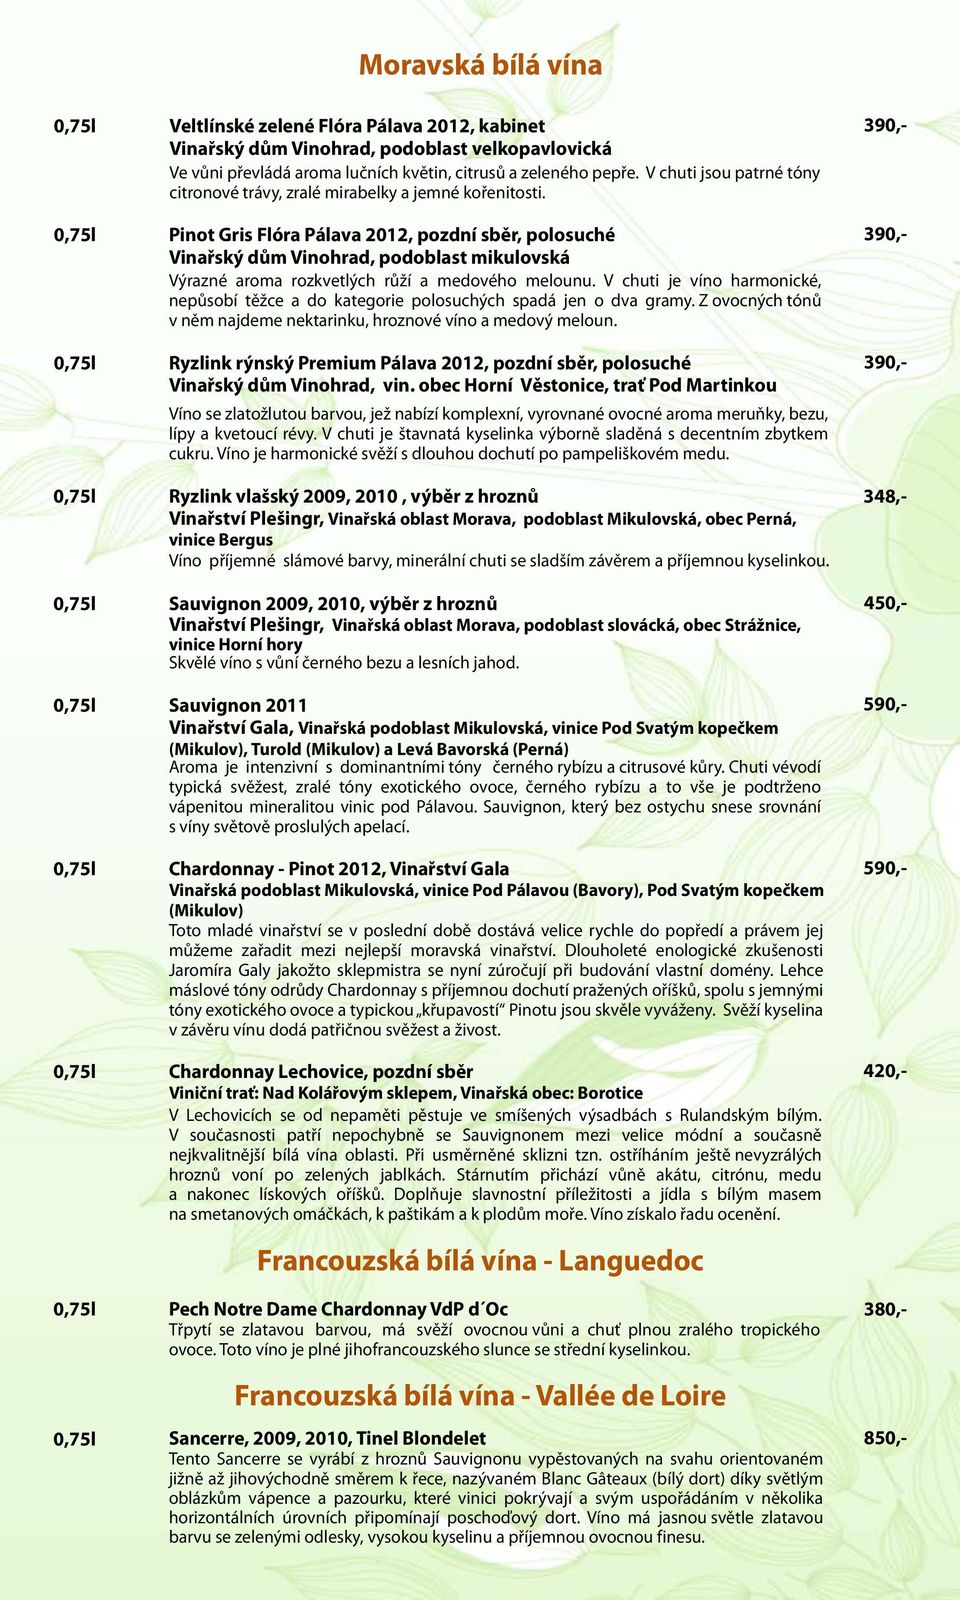 0,75l Pinot Gris Flóra Pálava 2012, pozdní sběr, polosuché Vinařský dům Vinohrad, podoblast mikulovská Výrazné aroma rozkvetlých růží a medového melounu.